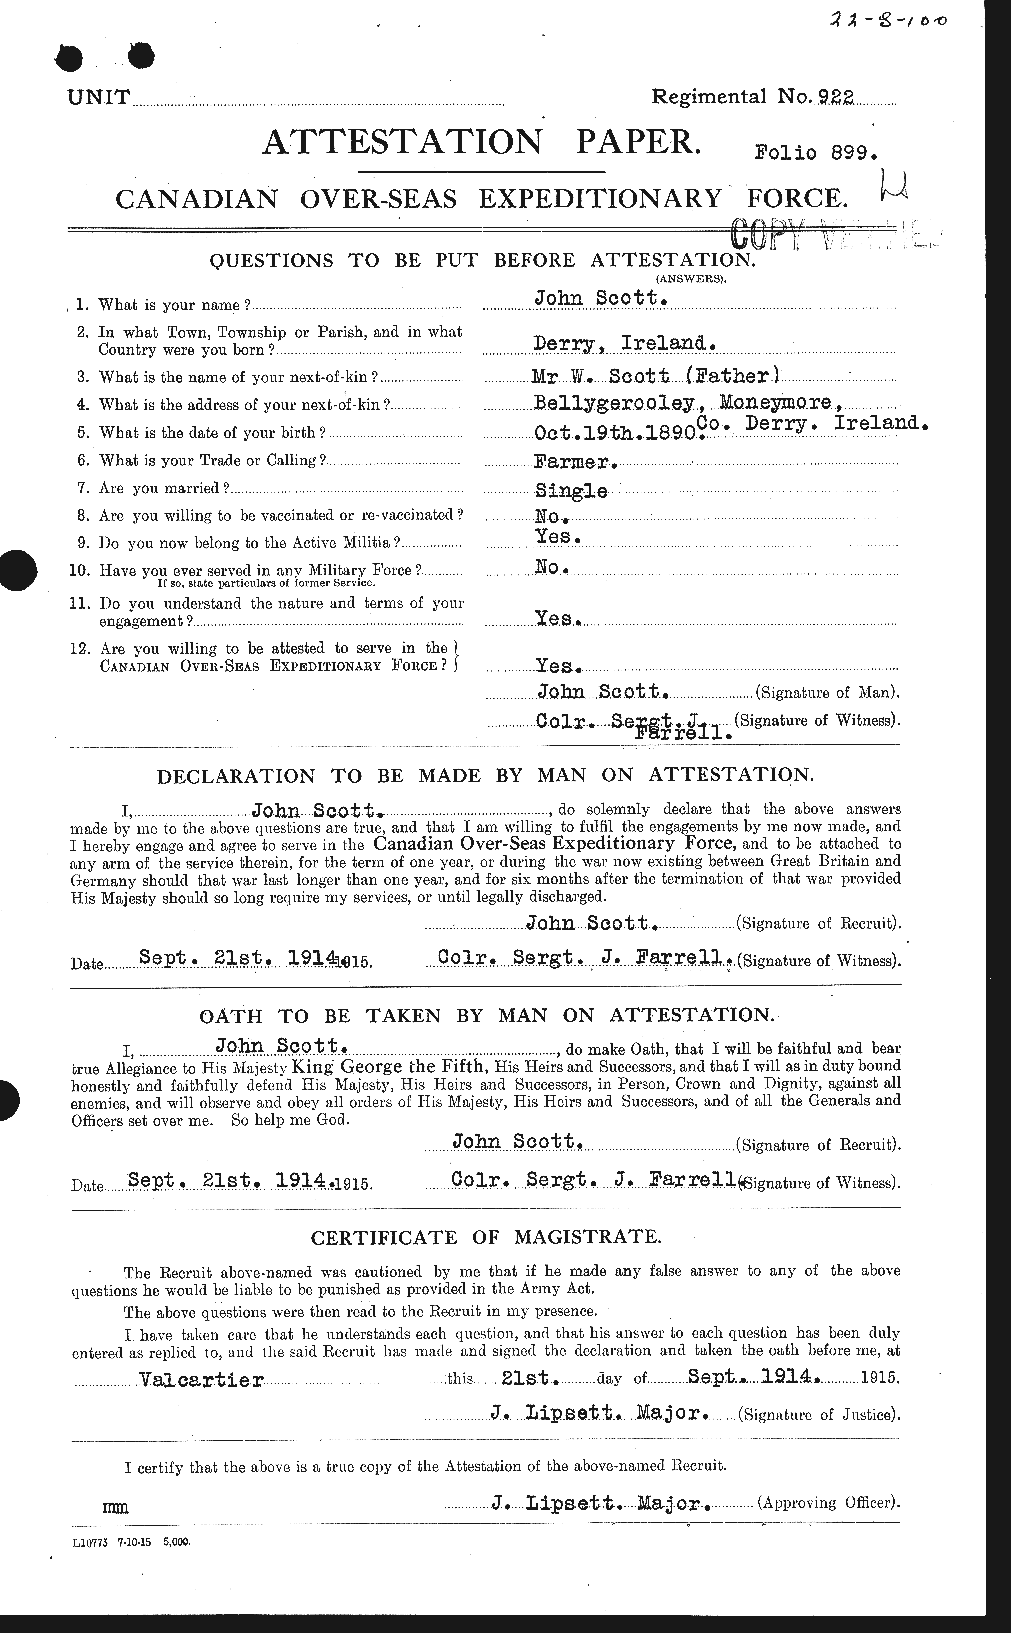 Dossiers du Personnel de la Première Guerre mondiale - CEC 084908a